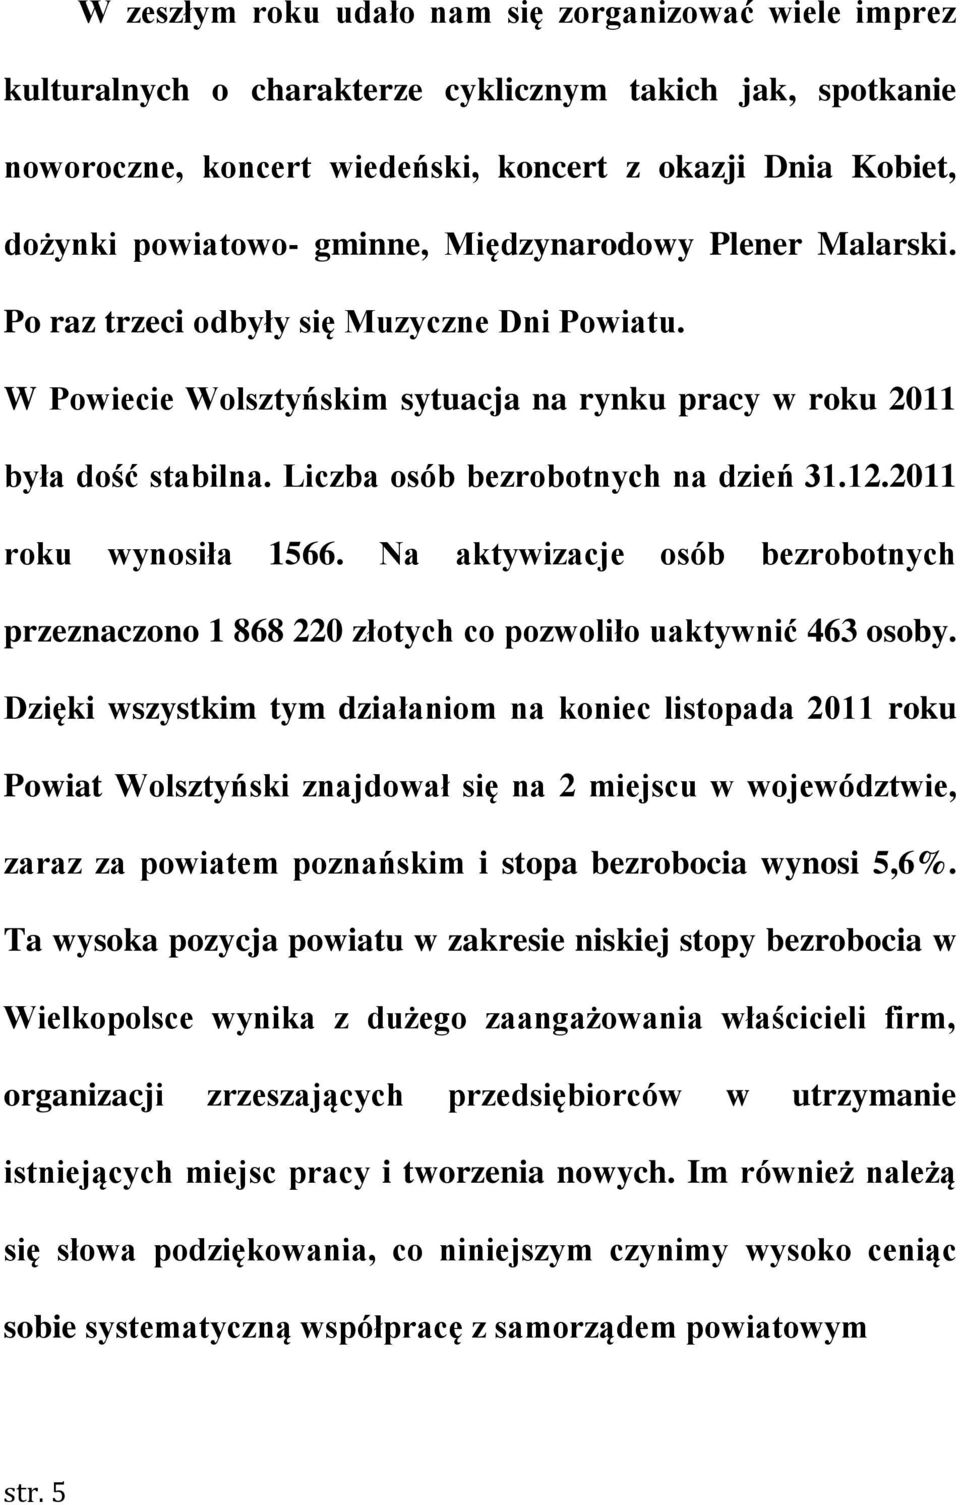 Liczba osób bezrobotnych na dzień 31.12.2011 roku wynosiła 1566. Na aktywizacje osób bezrobotnych przeznaczono 1 868 220 złotych co pozwoliło uaktywnić 463 osoby.